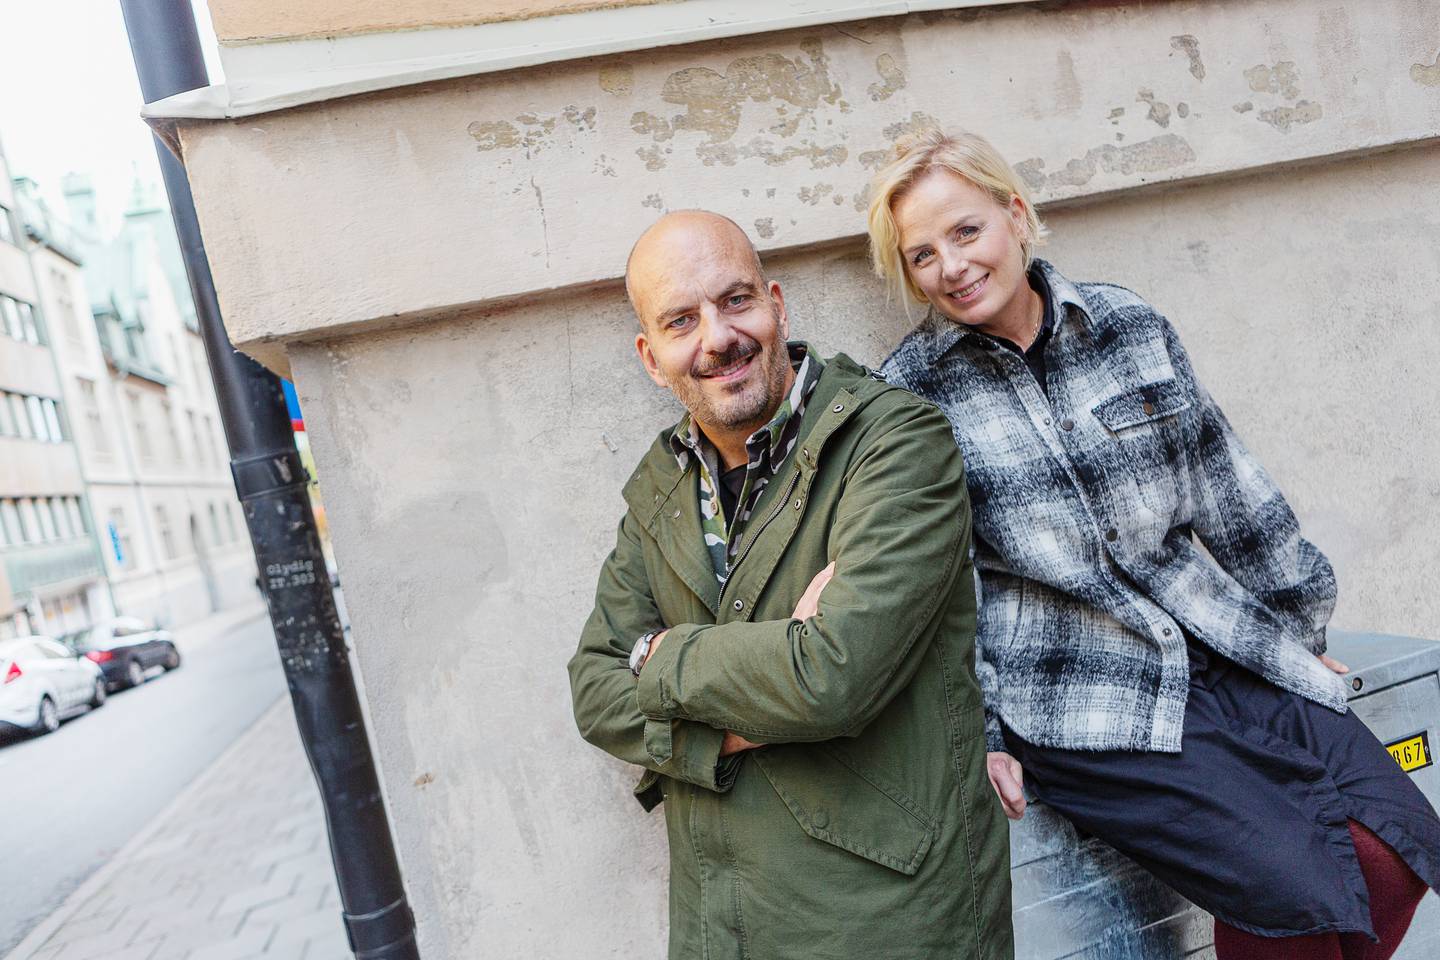 podden “Föräldrapeppen”, som görs av paret och fyrabarnsföräldrarna Jeanette och Gabriel Ingemarsson och produceras i samarbete med Dagen.